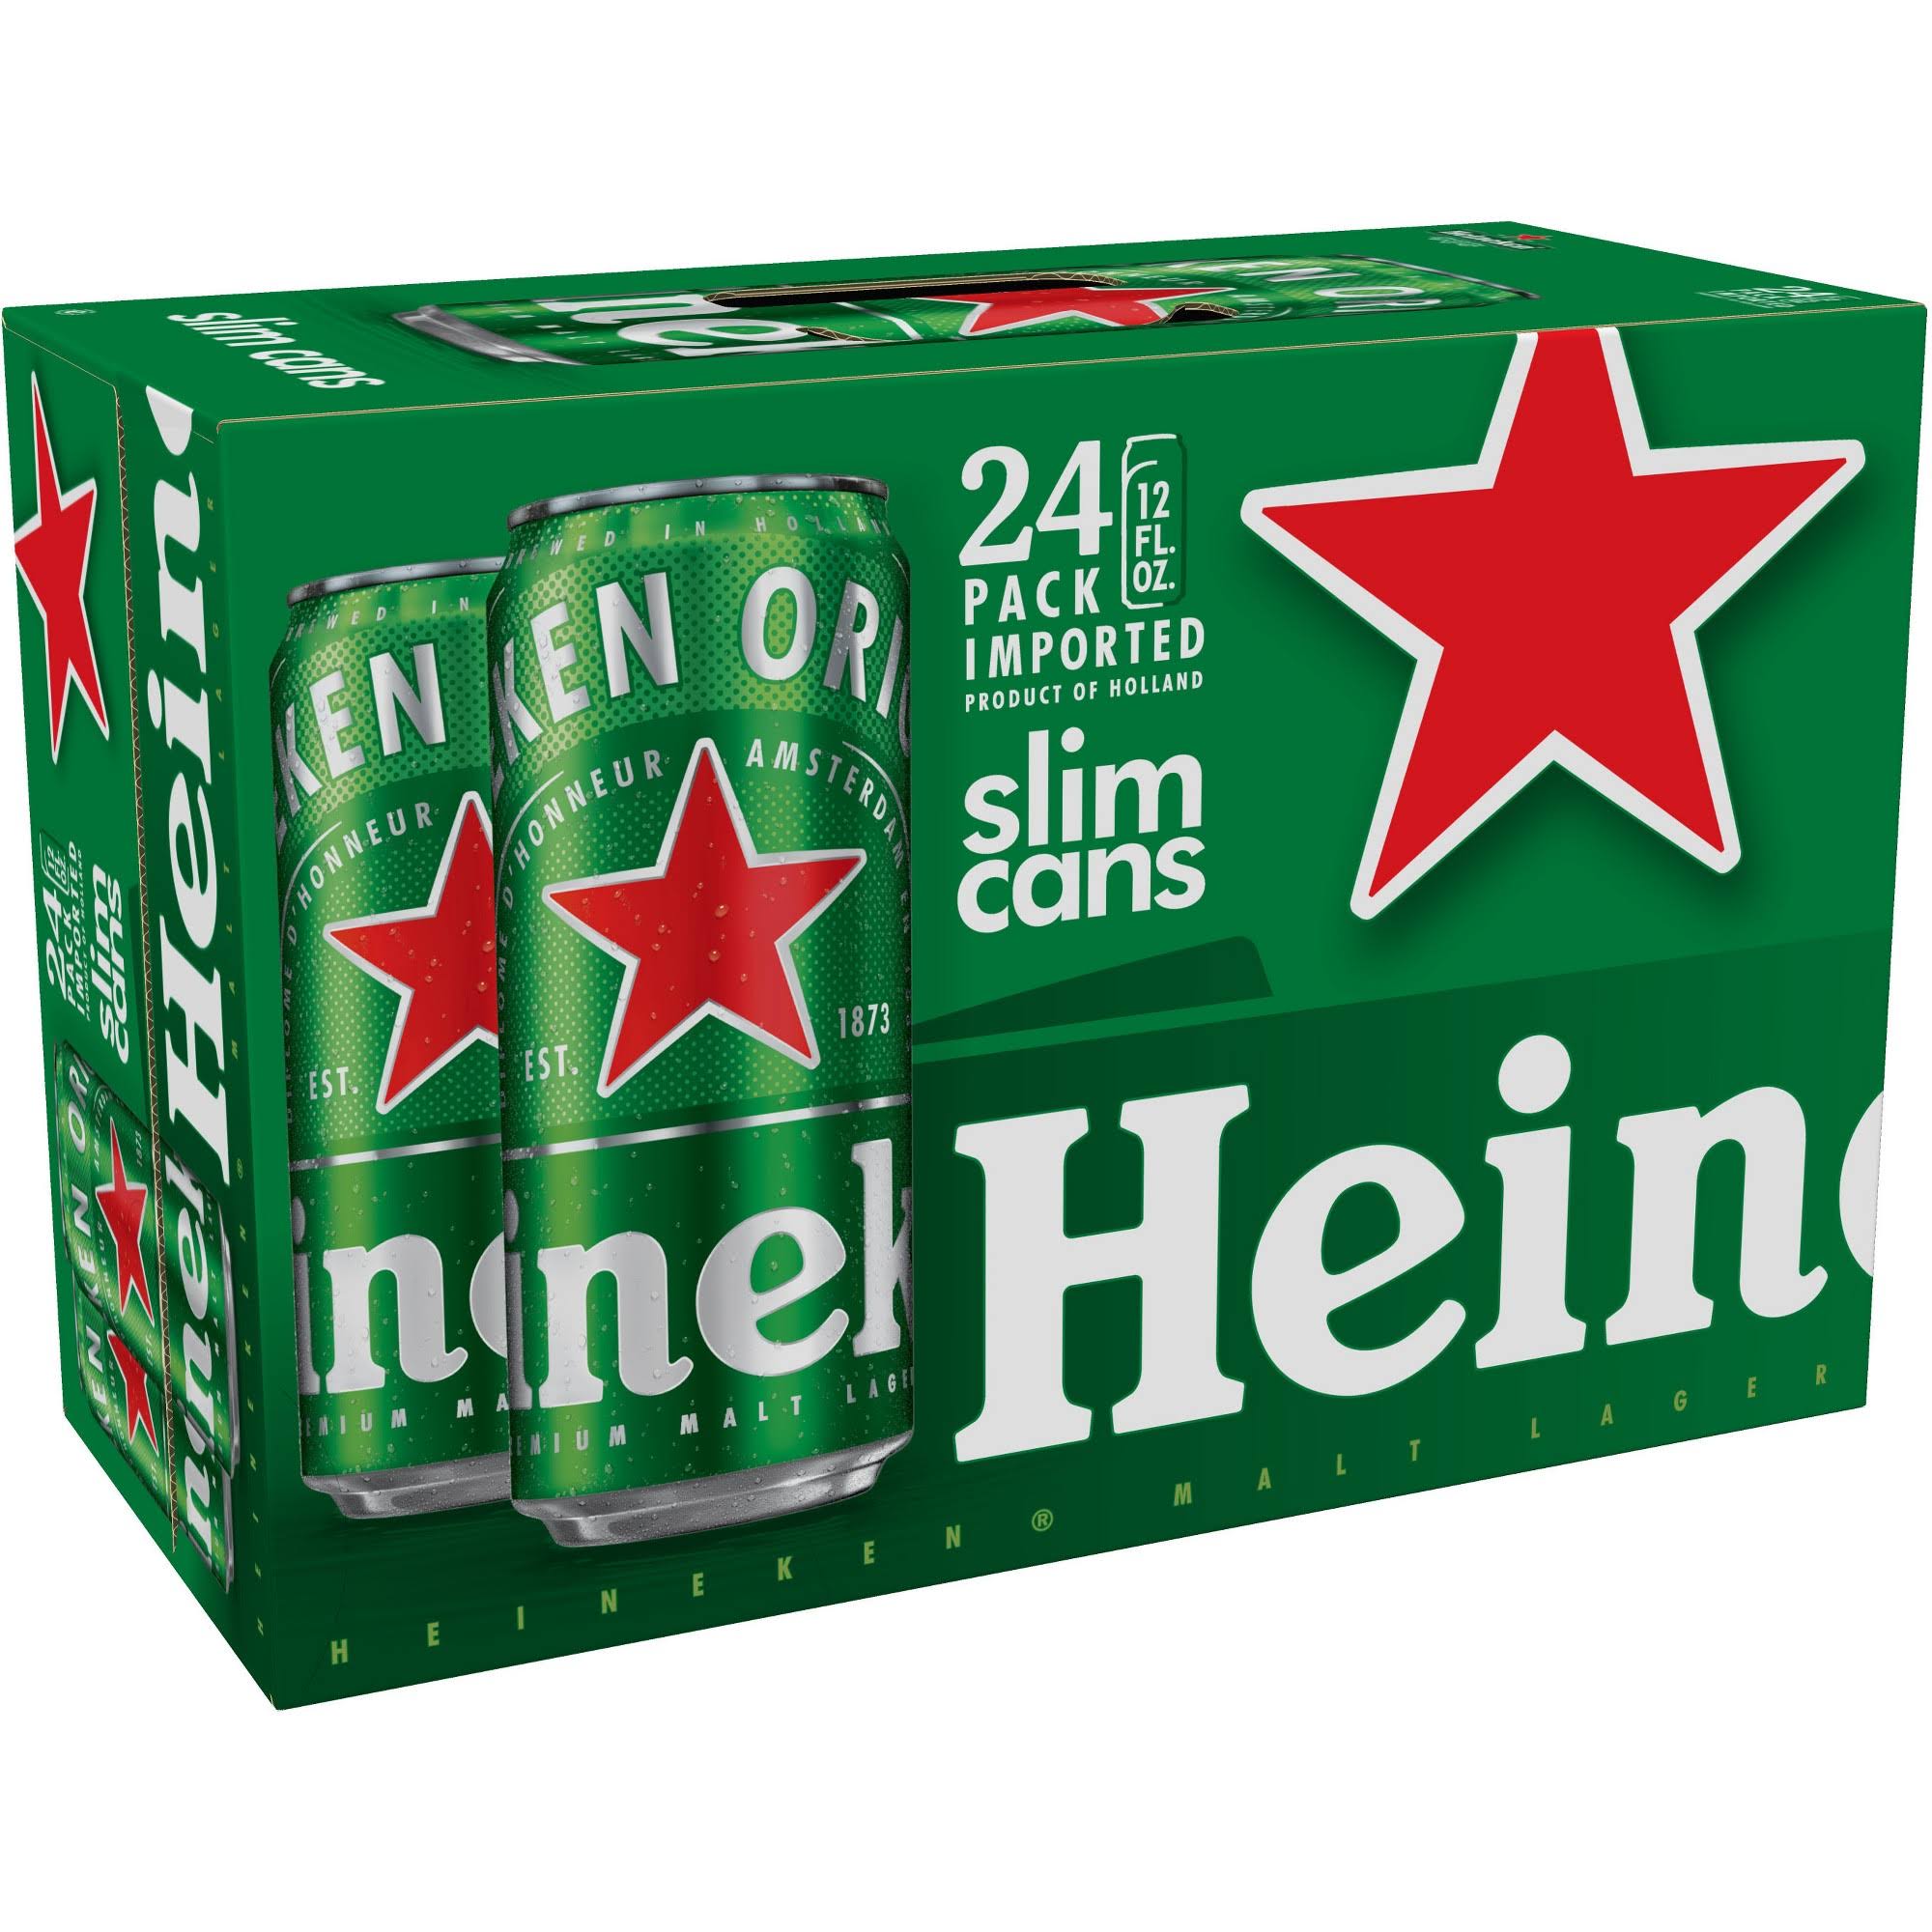 Heineken Beer Cans - 24x12oz